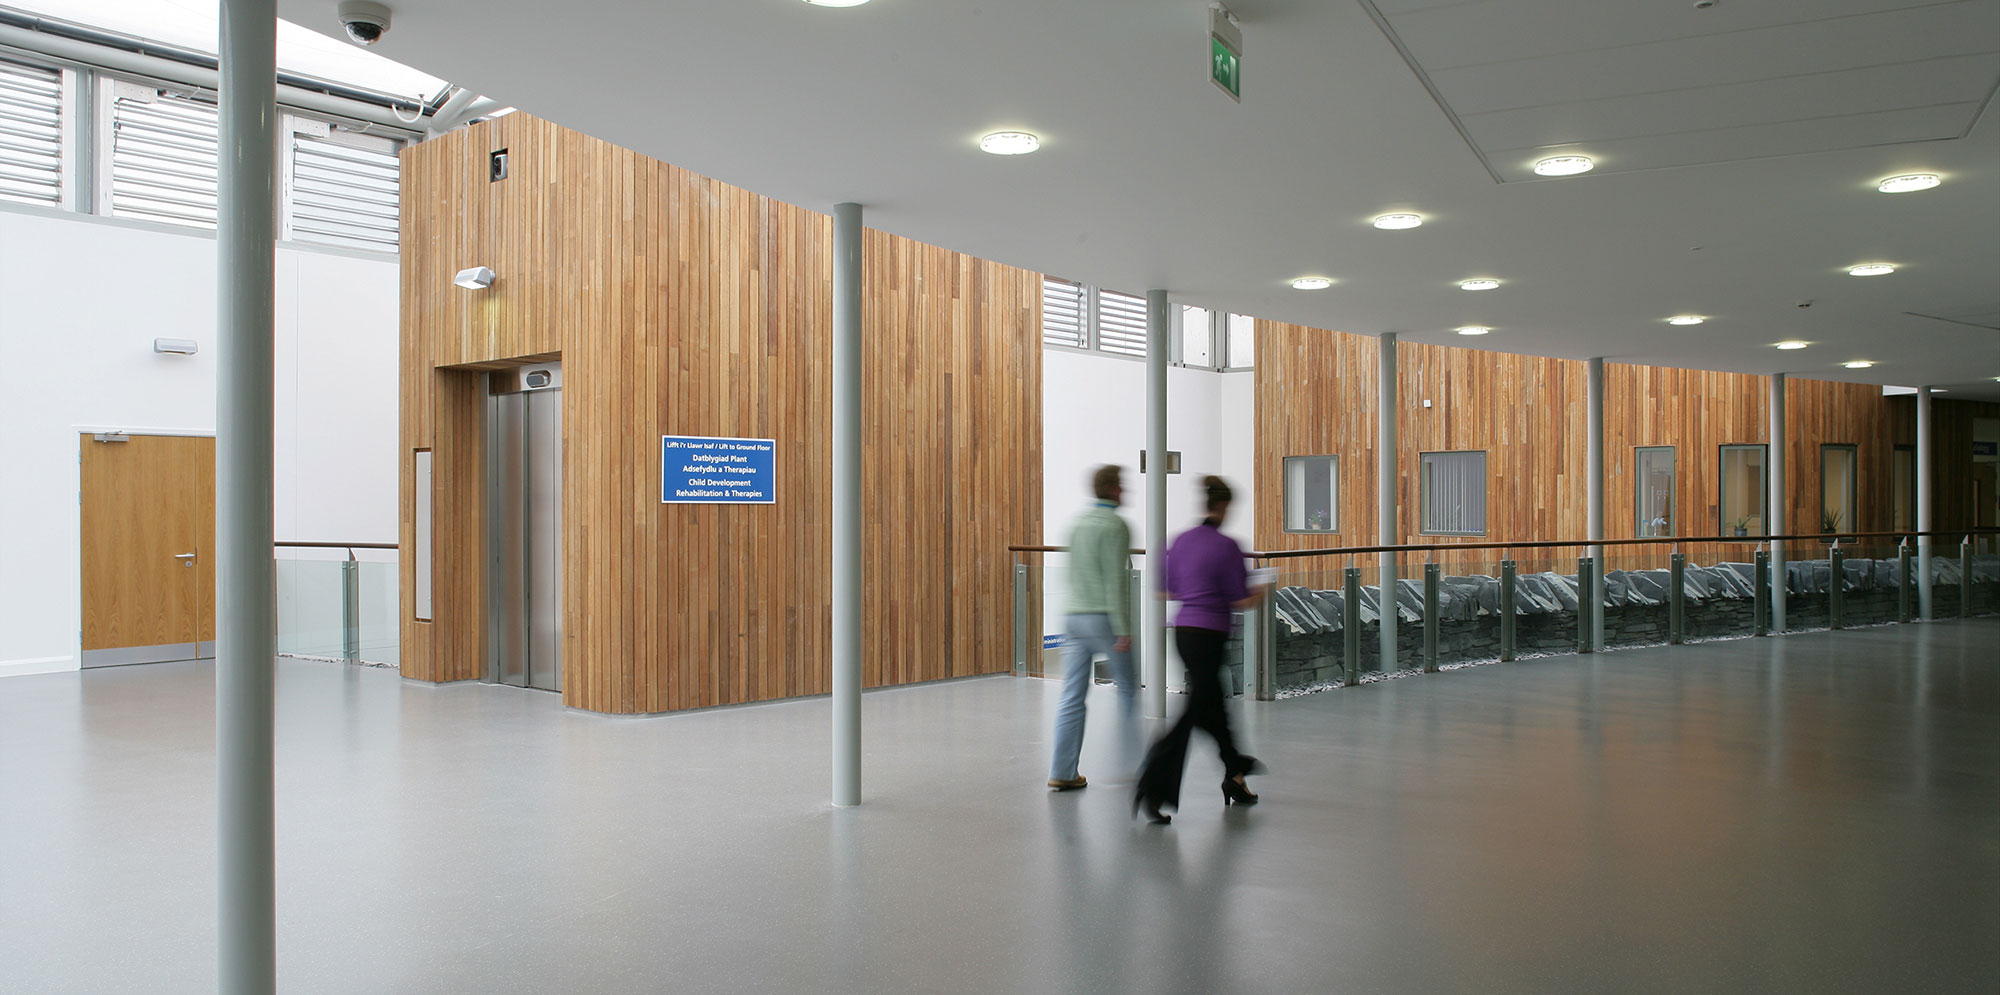 Two people walking down hallway inside Ysbyty Alltwen Hospital